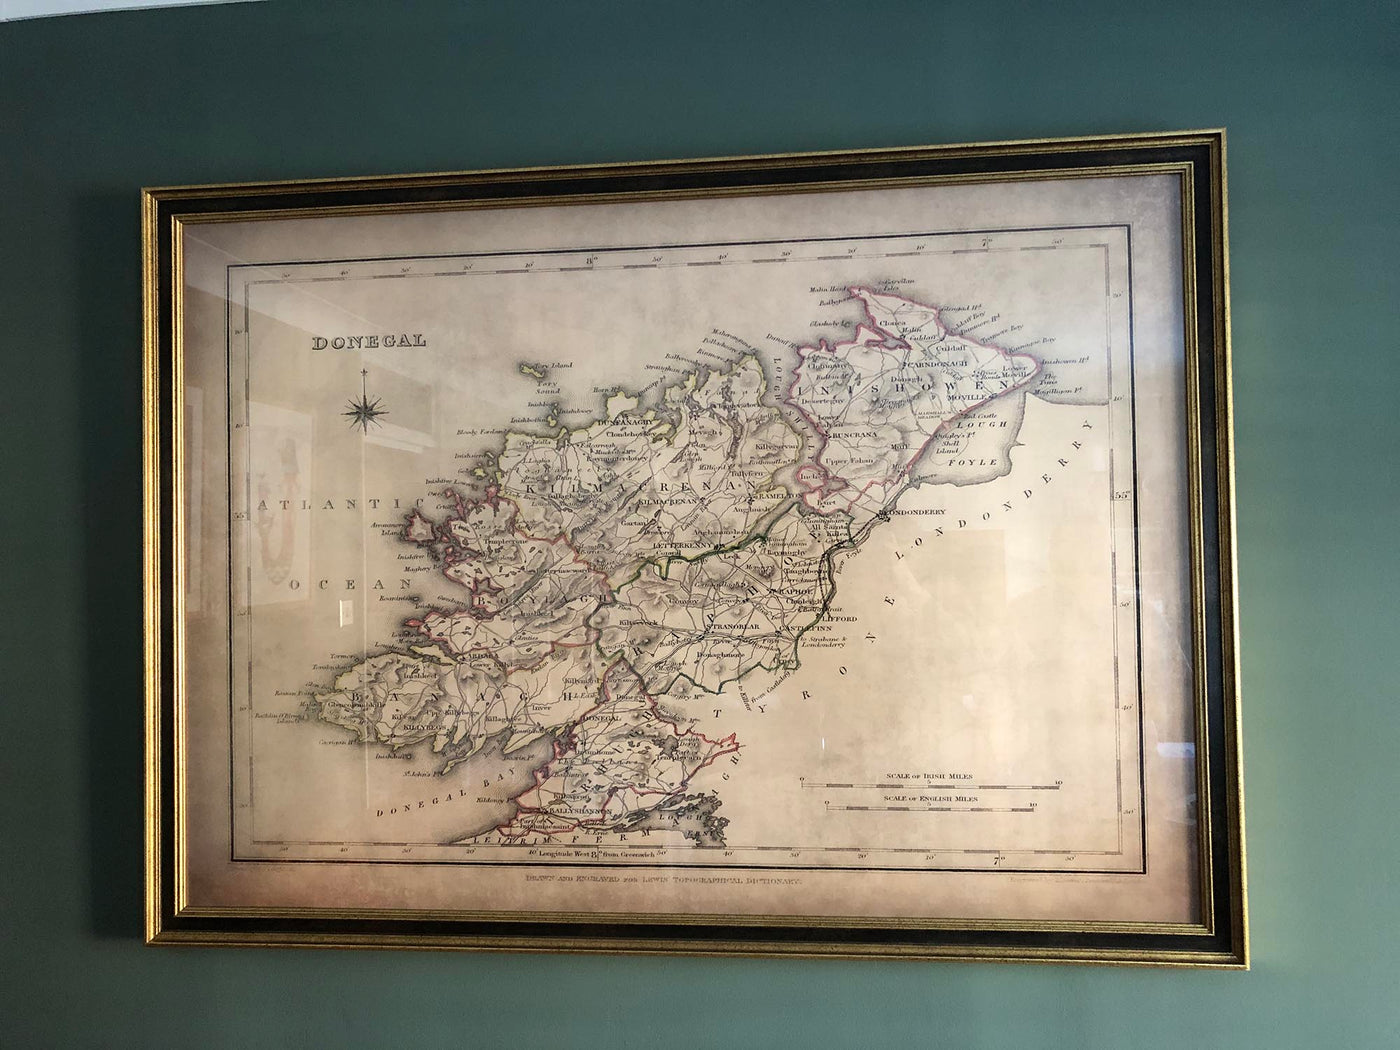 Alte Karte von Donegal von Samuel Lewis, 1844: Ballyshannon, Letterkenny, Dunfanaghy, Killybegs, Glenveagh-Nationalpark